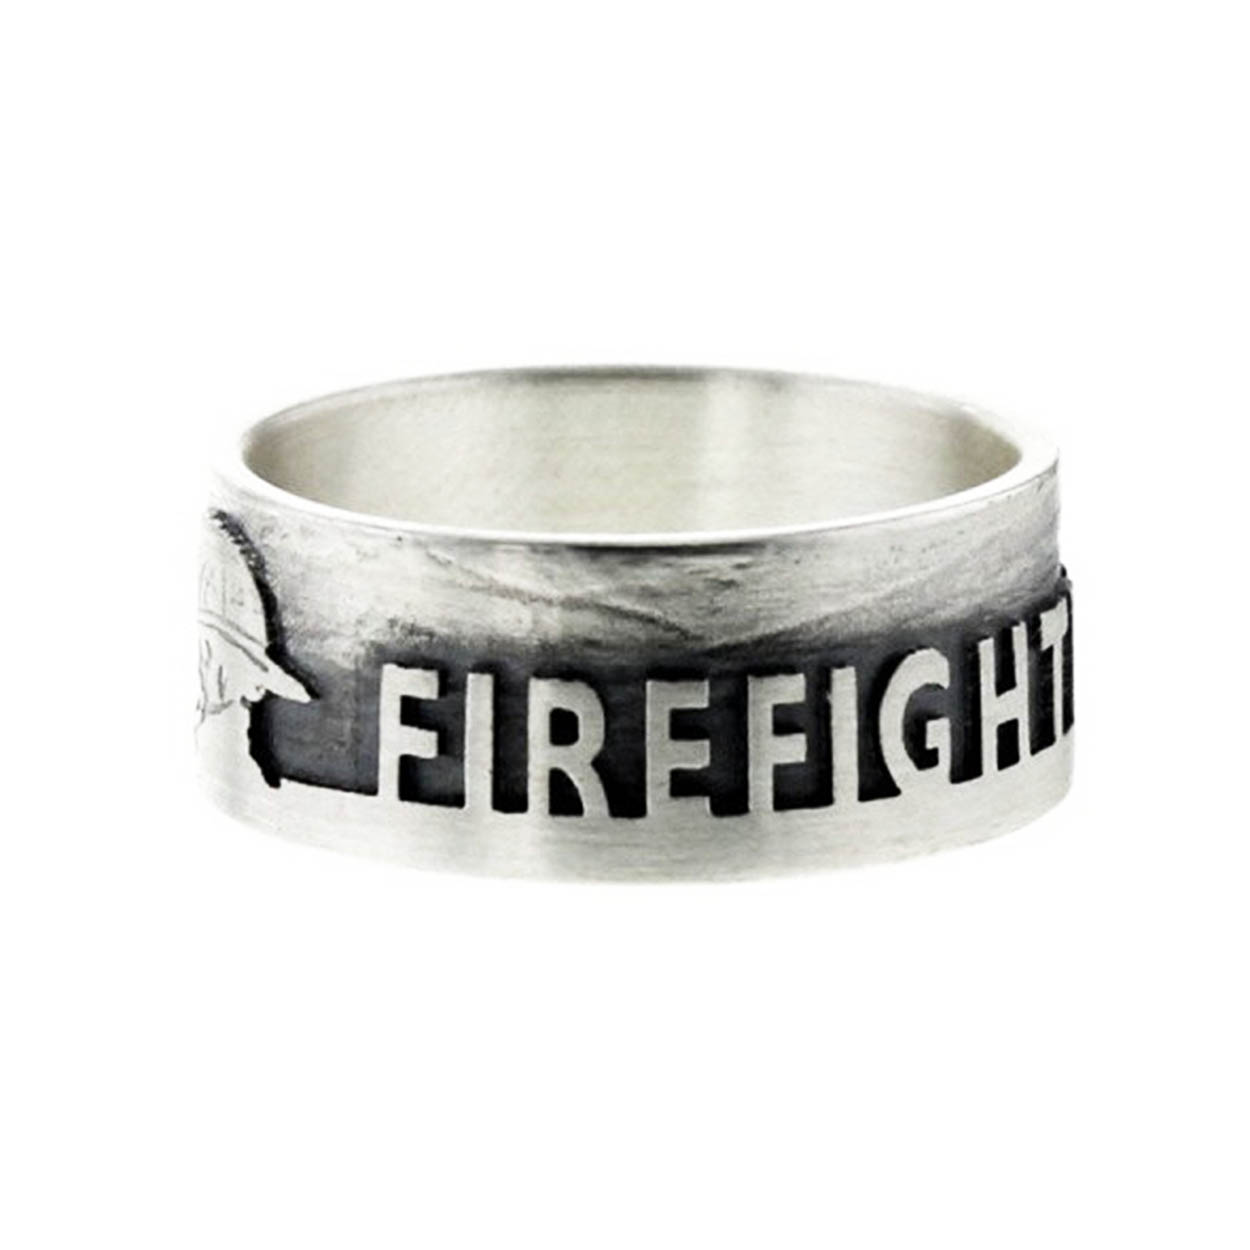 Firefighter for Life - Ring Sterlingsilber 